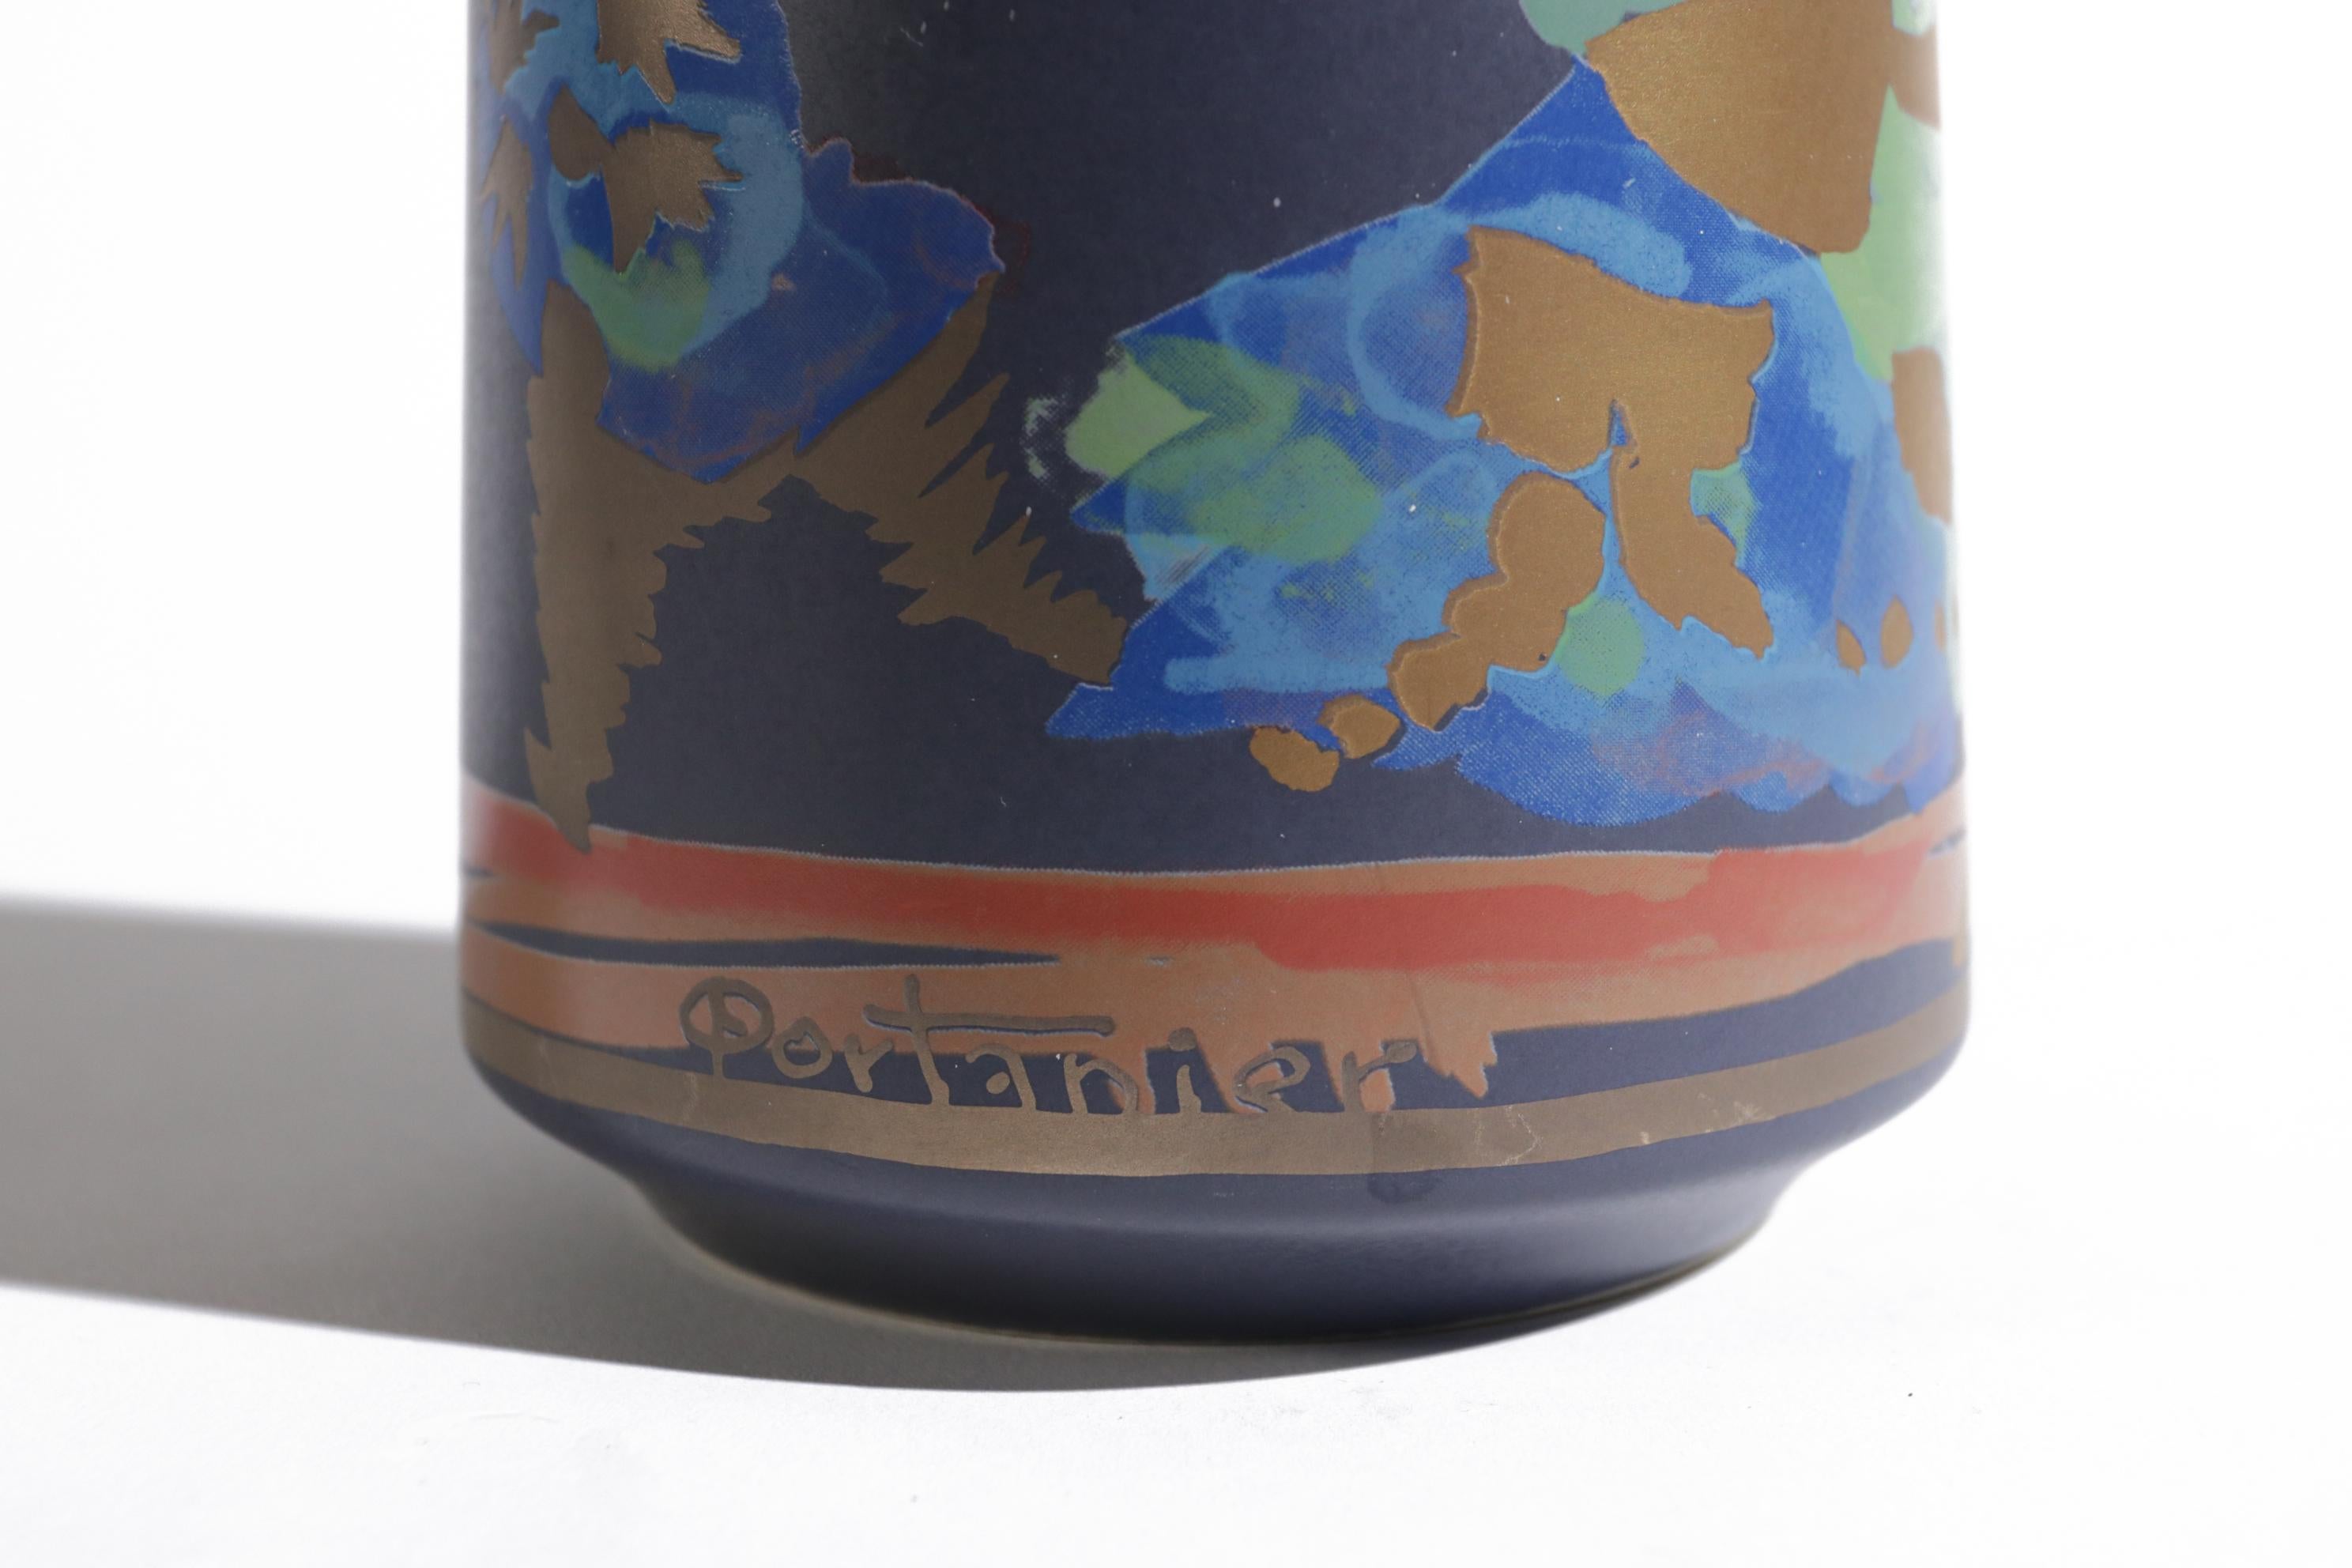 Vase im Vintage-Design von Rosenthal Deutschland, entworfen von Gilbert Portanier in den 1980er Jahren.
Schöne Farben mit goldenen Details.
Die Vase ist in sehr gutem Zustand.

Abmessungen: 26 cm hoch und ca. 14,5 cm Durchmesser.